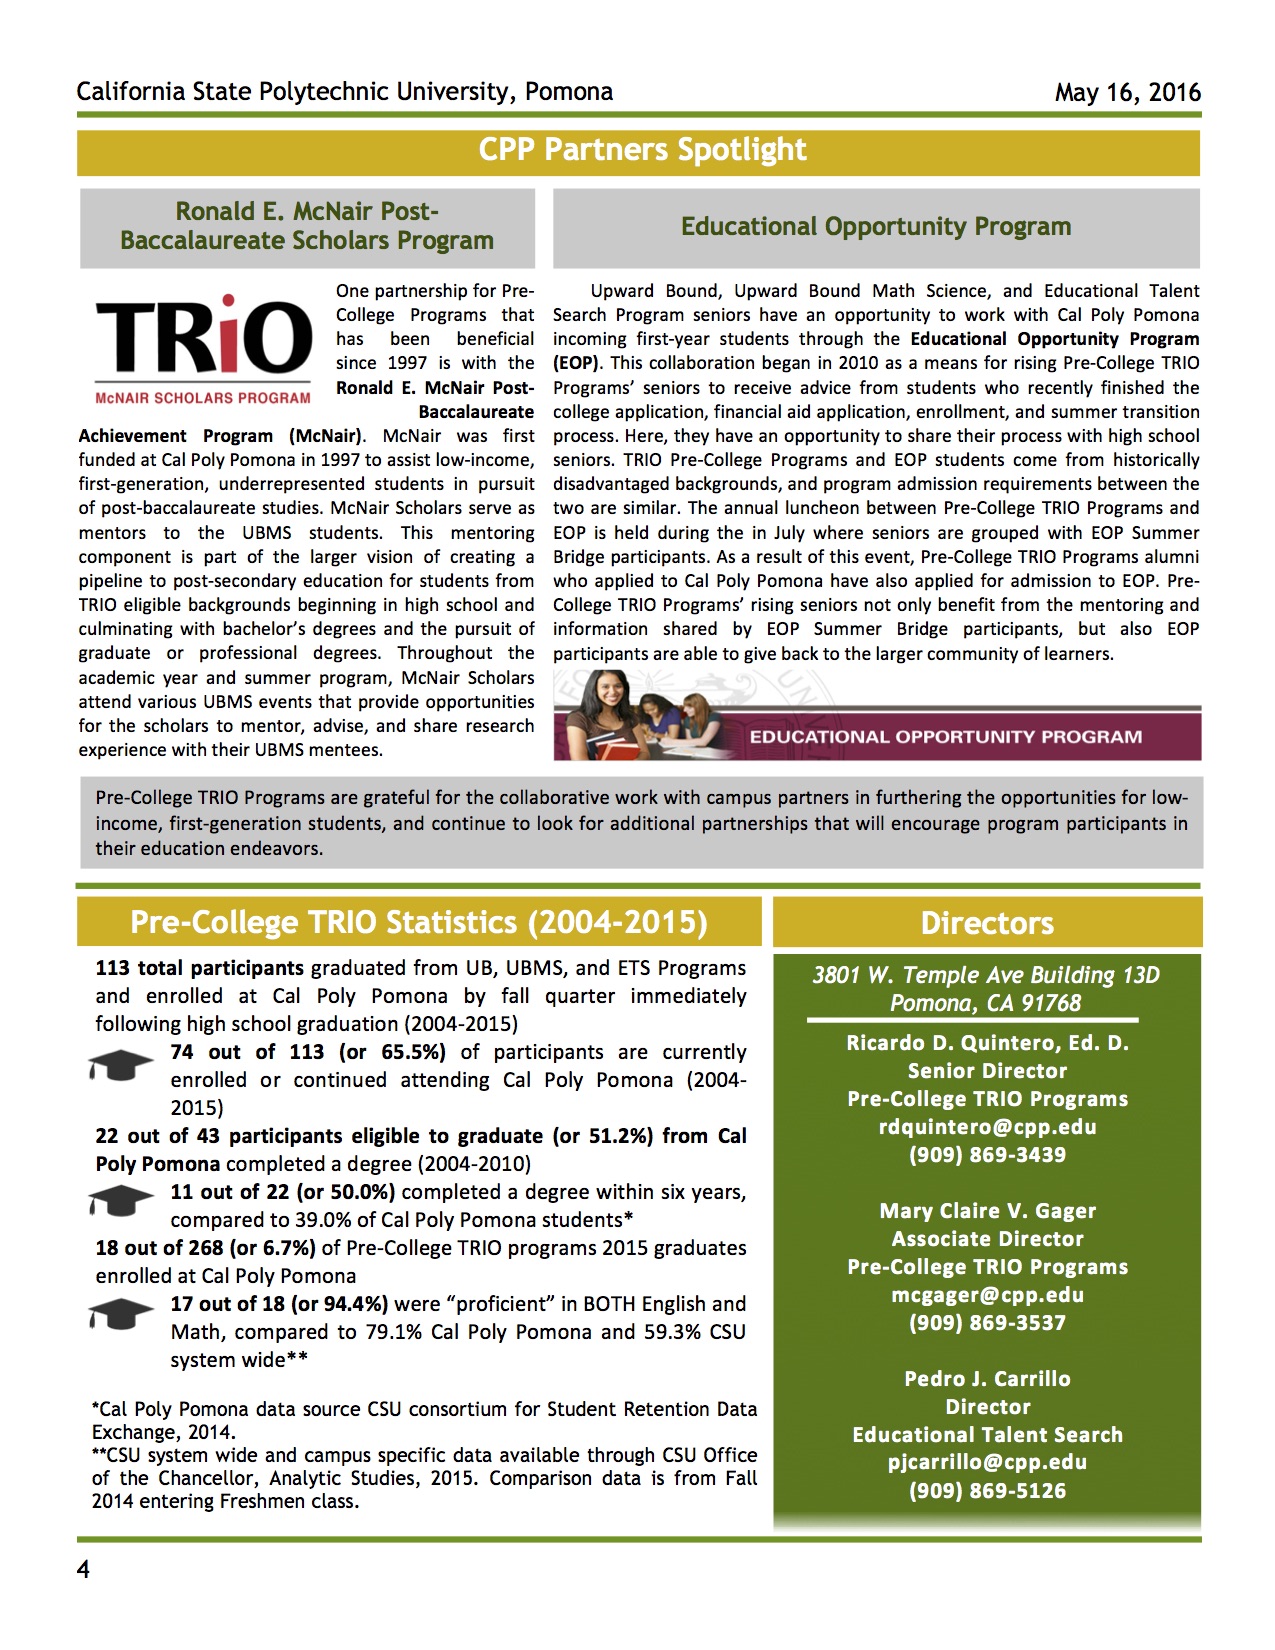 Pre-College TRIO Newsletter 4